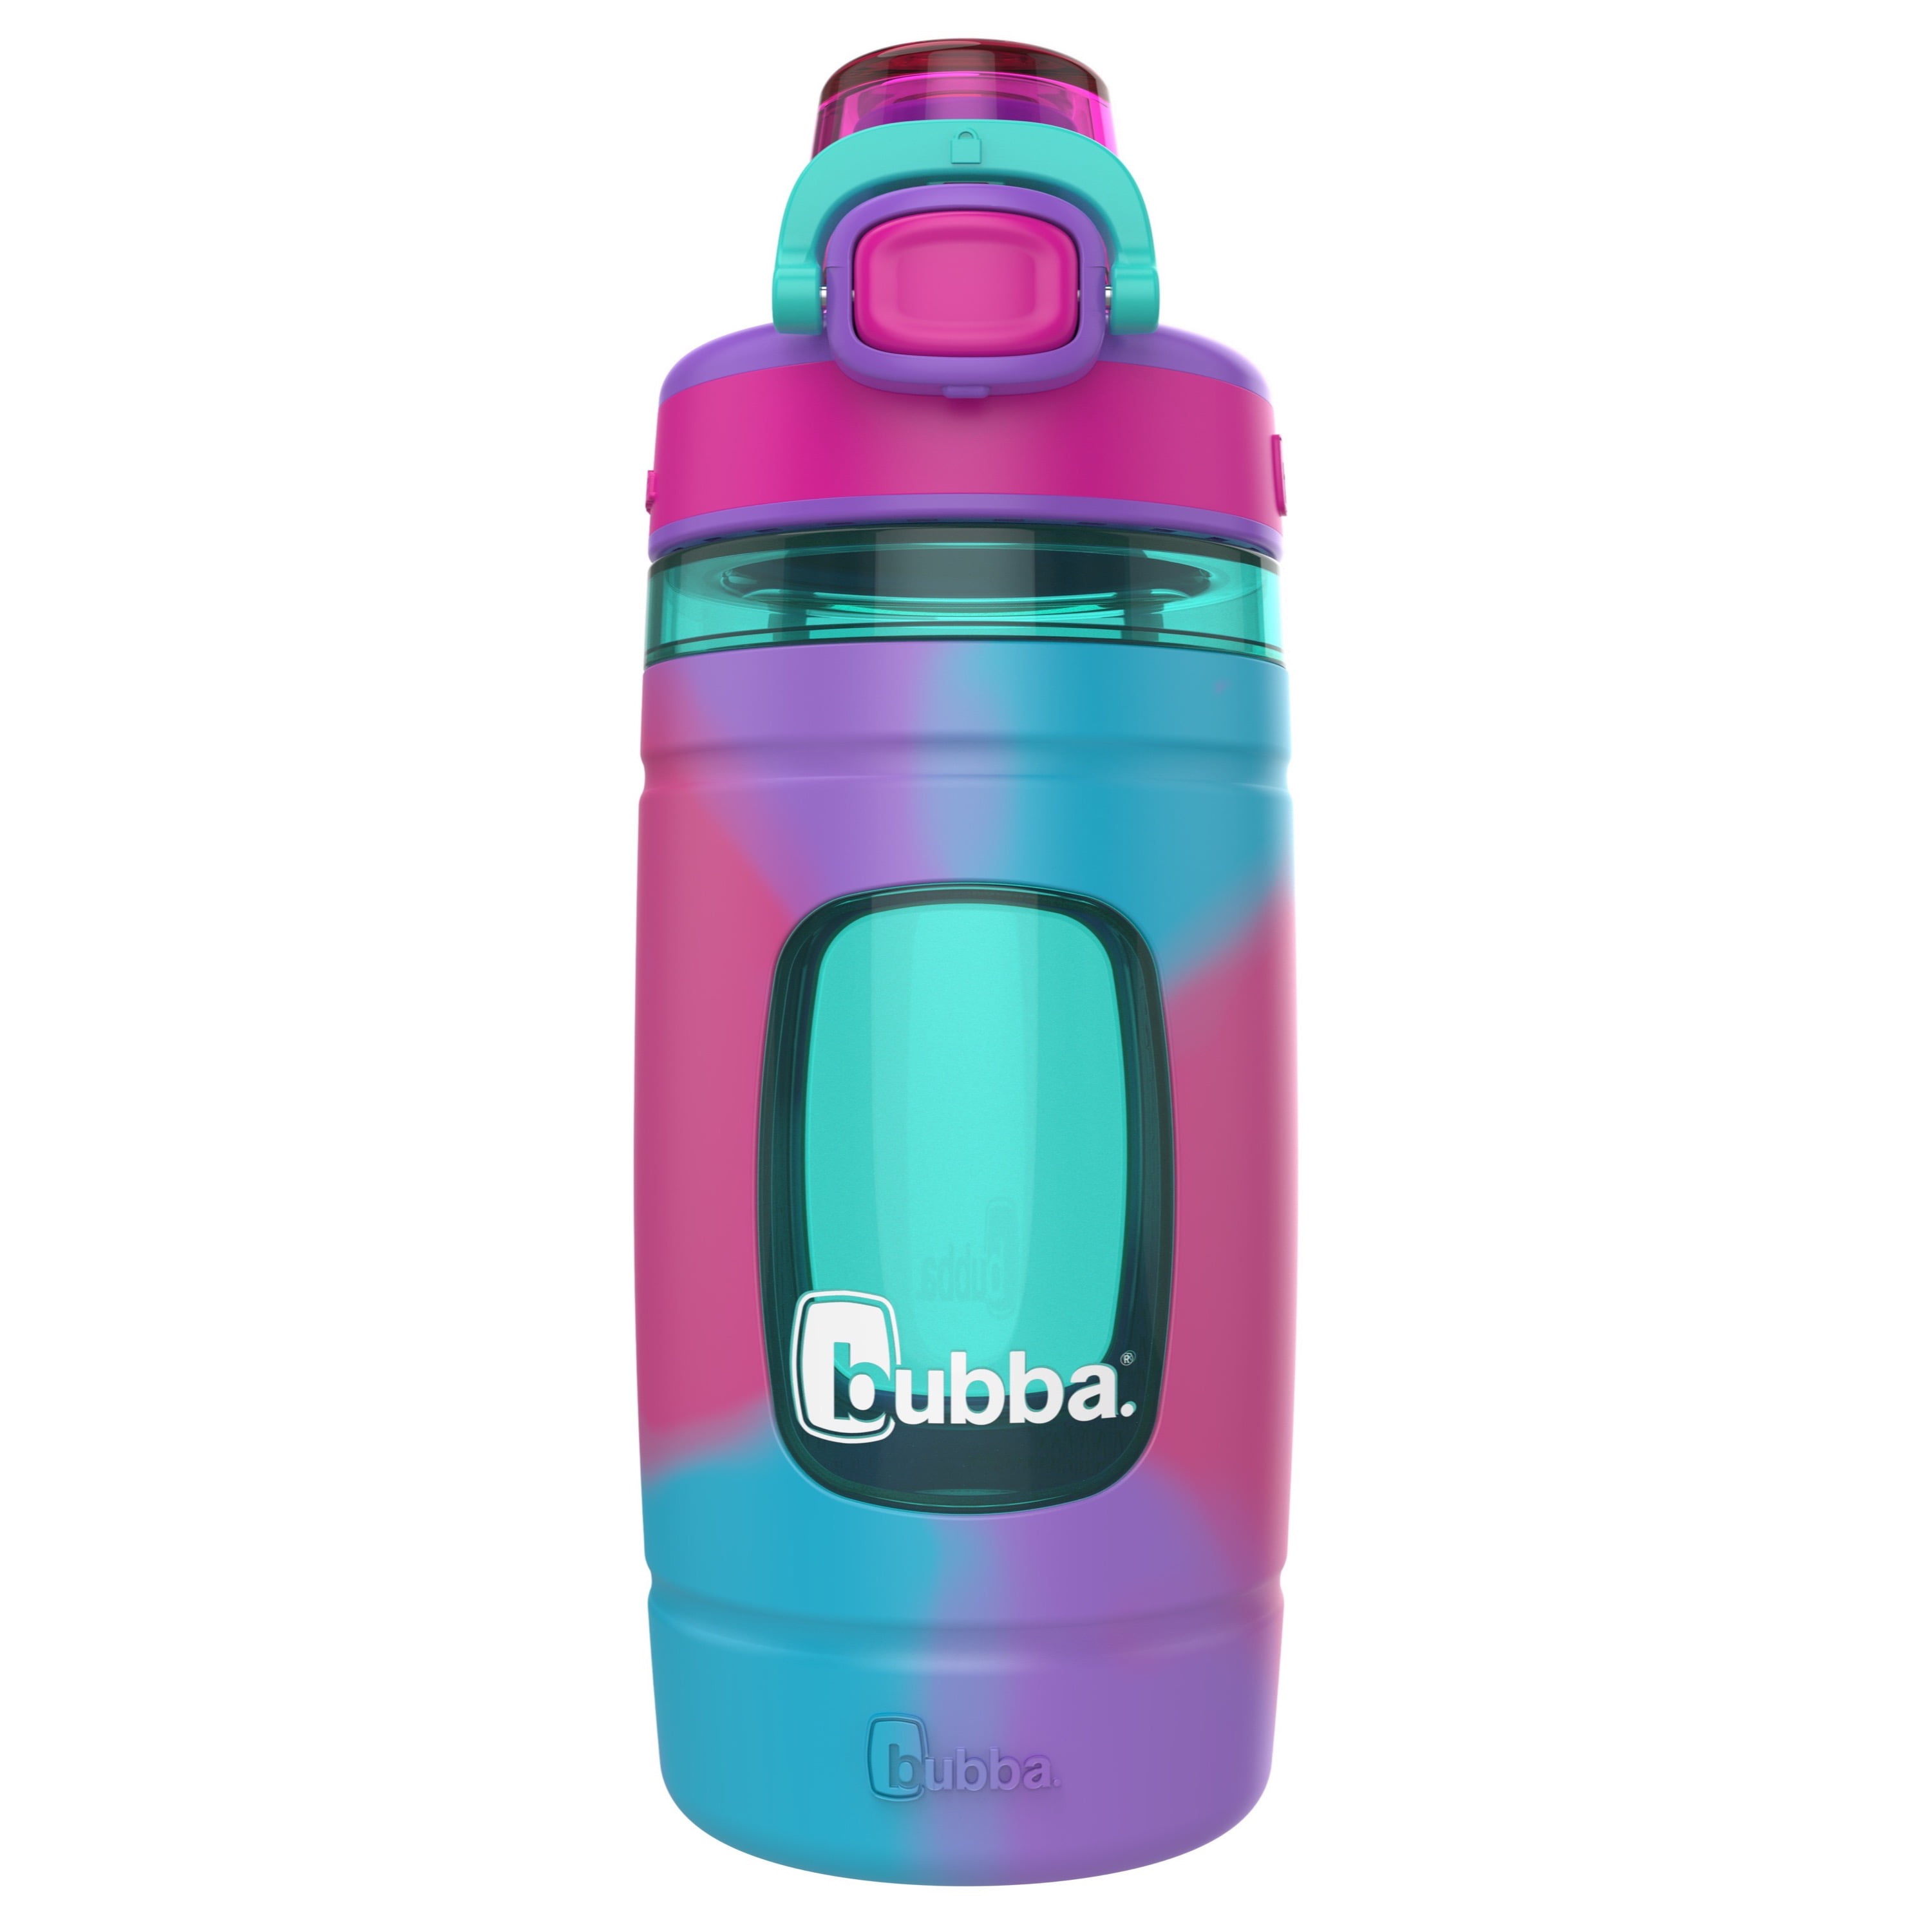 Bubba Flo Kids Water Bottle, Purple, 16 fl oz.